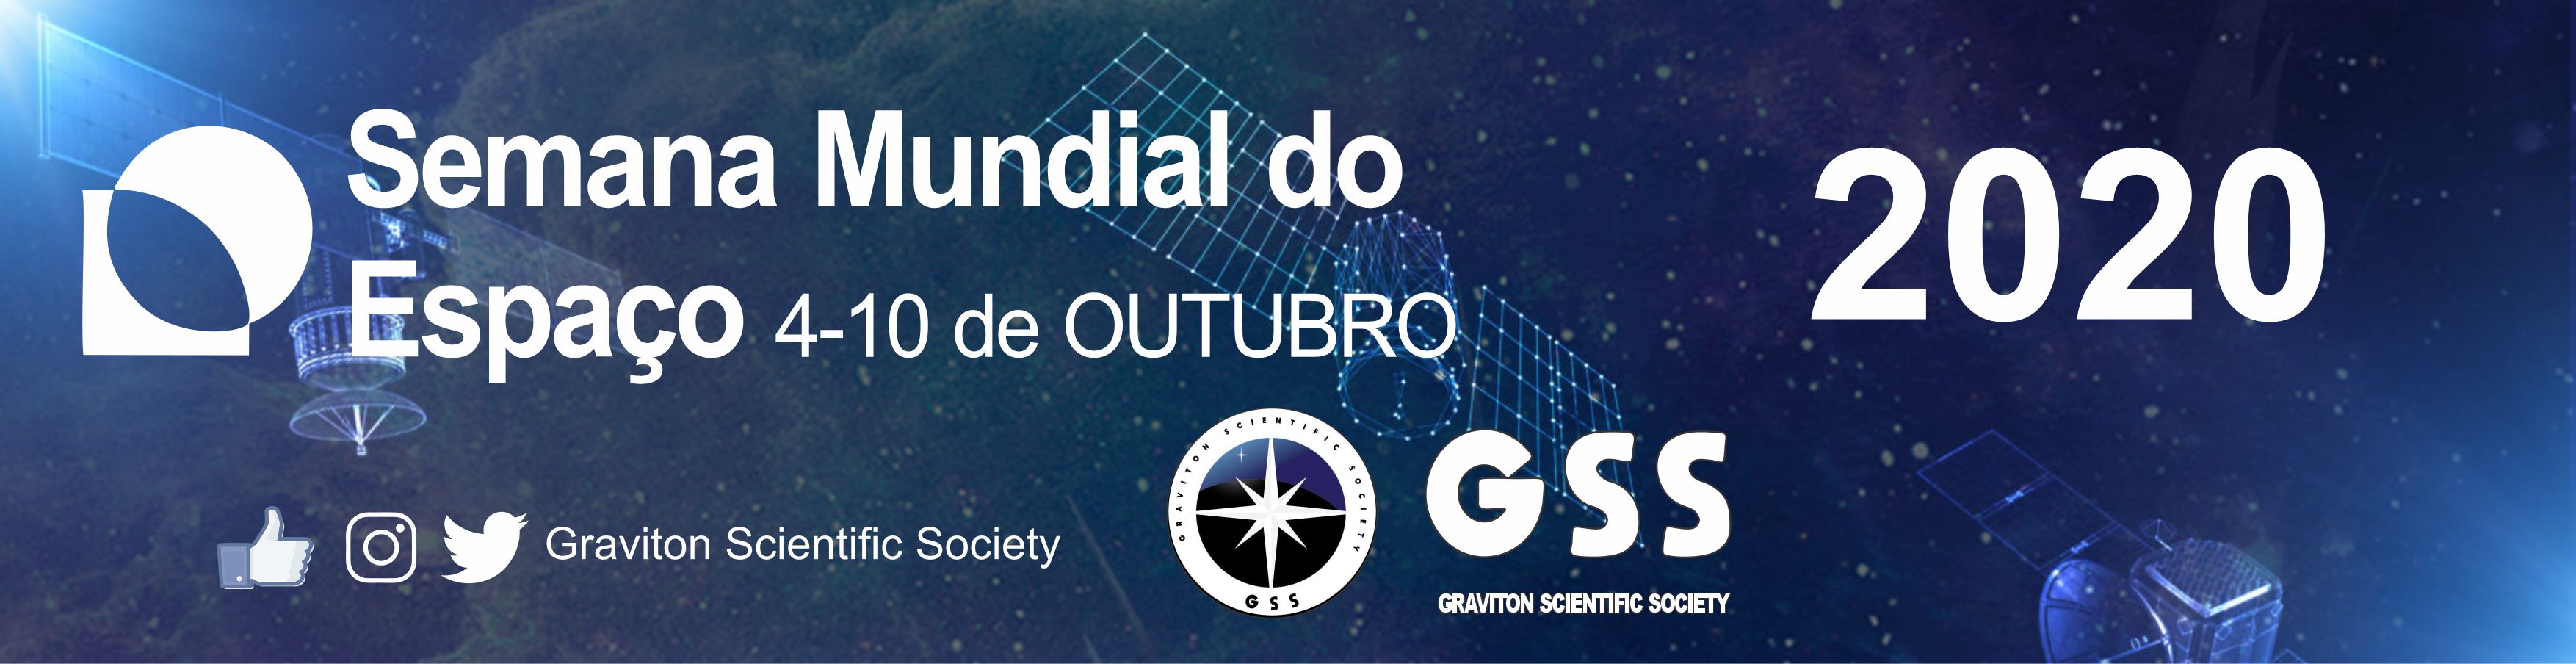 Evento organizado pela Graviton Scientific Society contará com a participação do Presidente da Agência Espacial Brasileira.